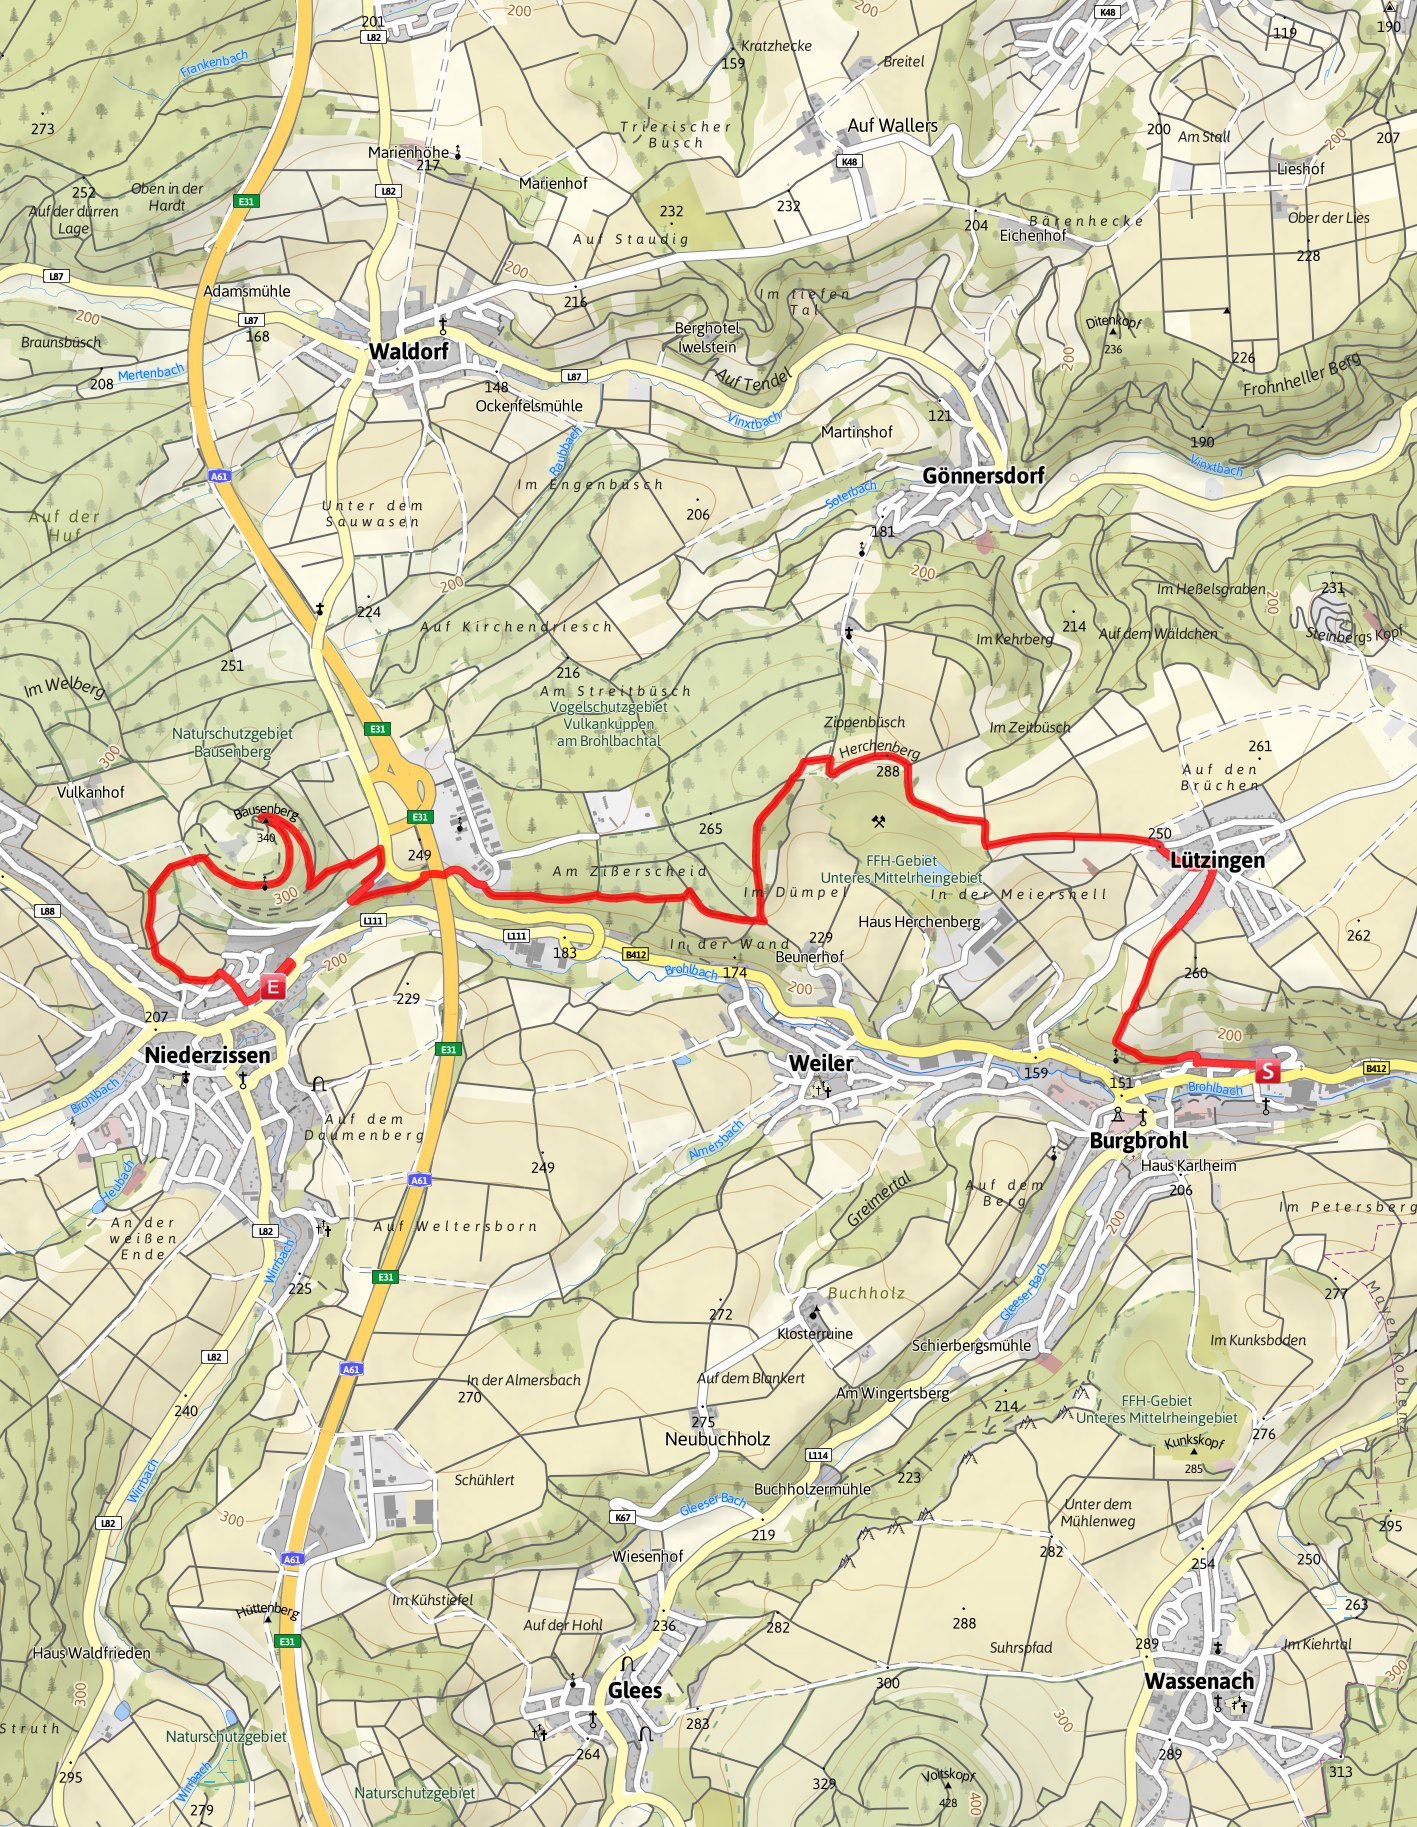 9.8 km 2:46 h 267 m 215 m Schwierigkeit Kartengrundlagen: outdooractive Kartografie; Deutschland: GeoBasis-DE / BKG 2016, GeoBasis-DE / GEObasis.nrw 2016, Österreich: 1996-2016 here.